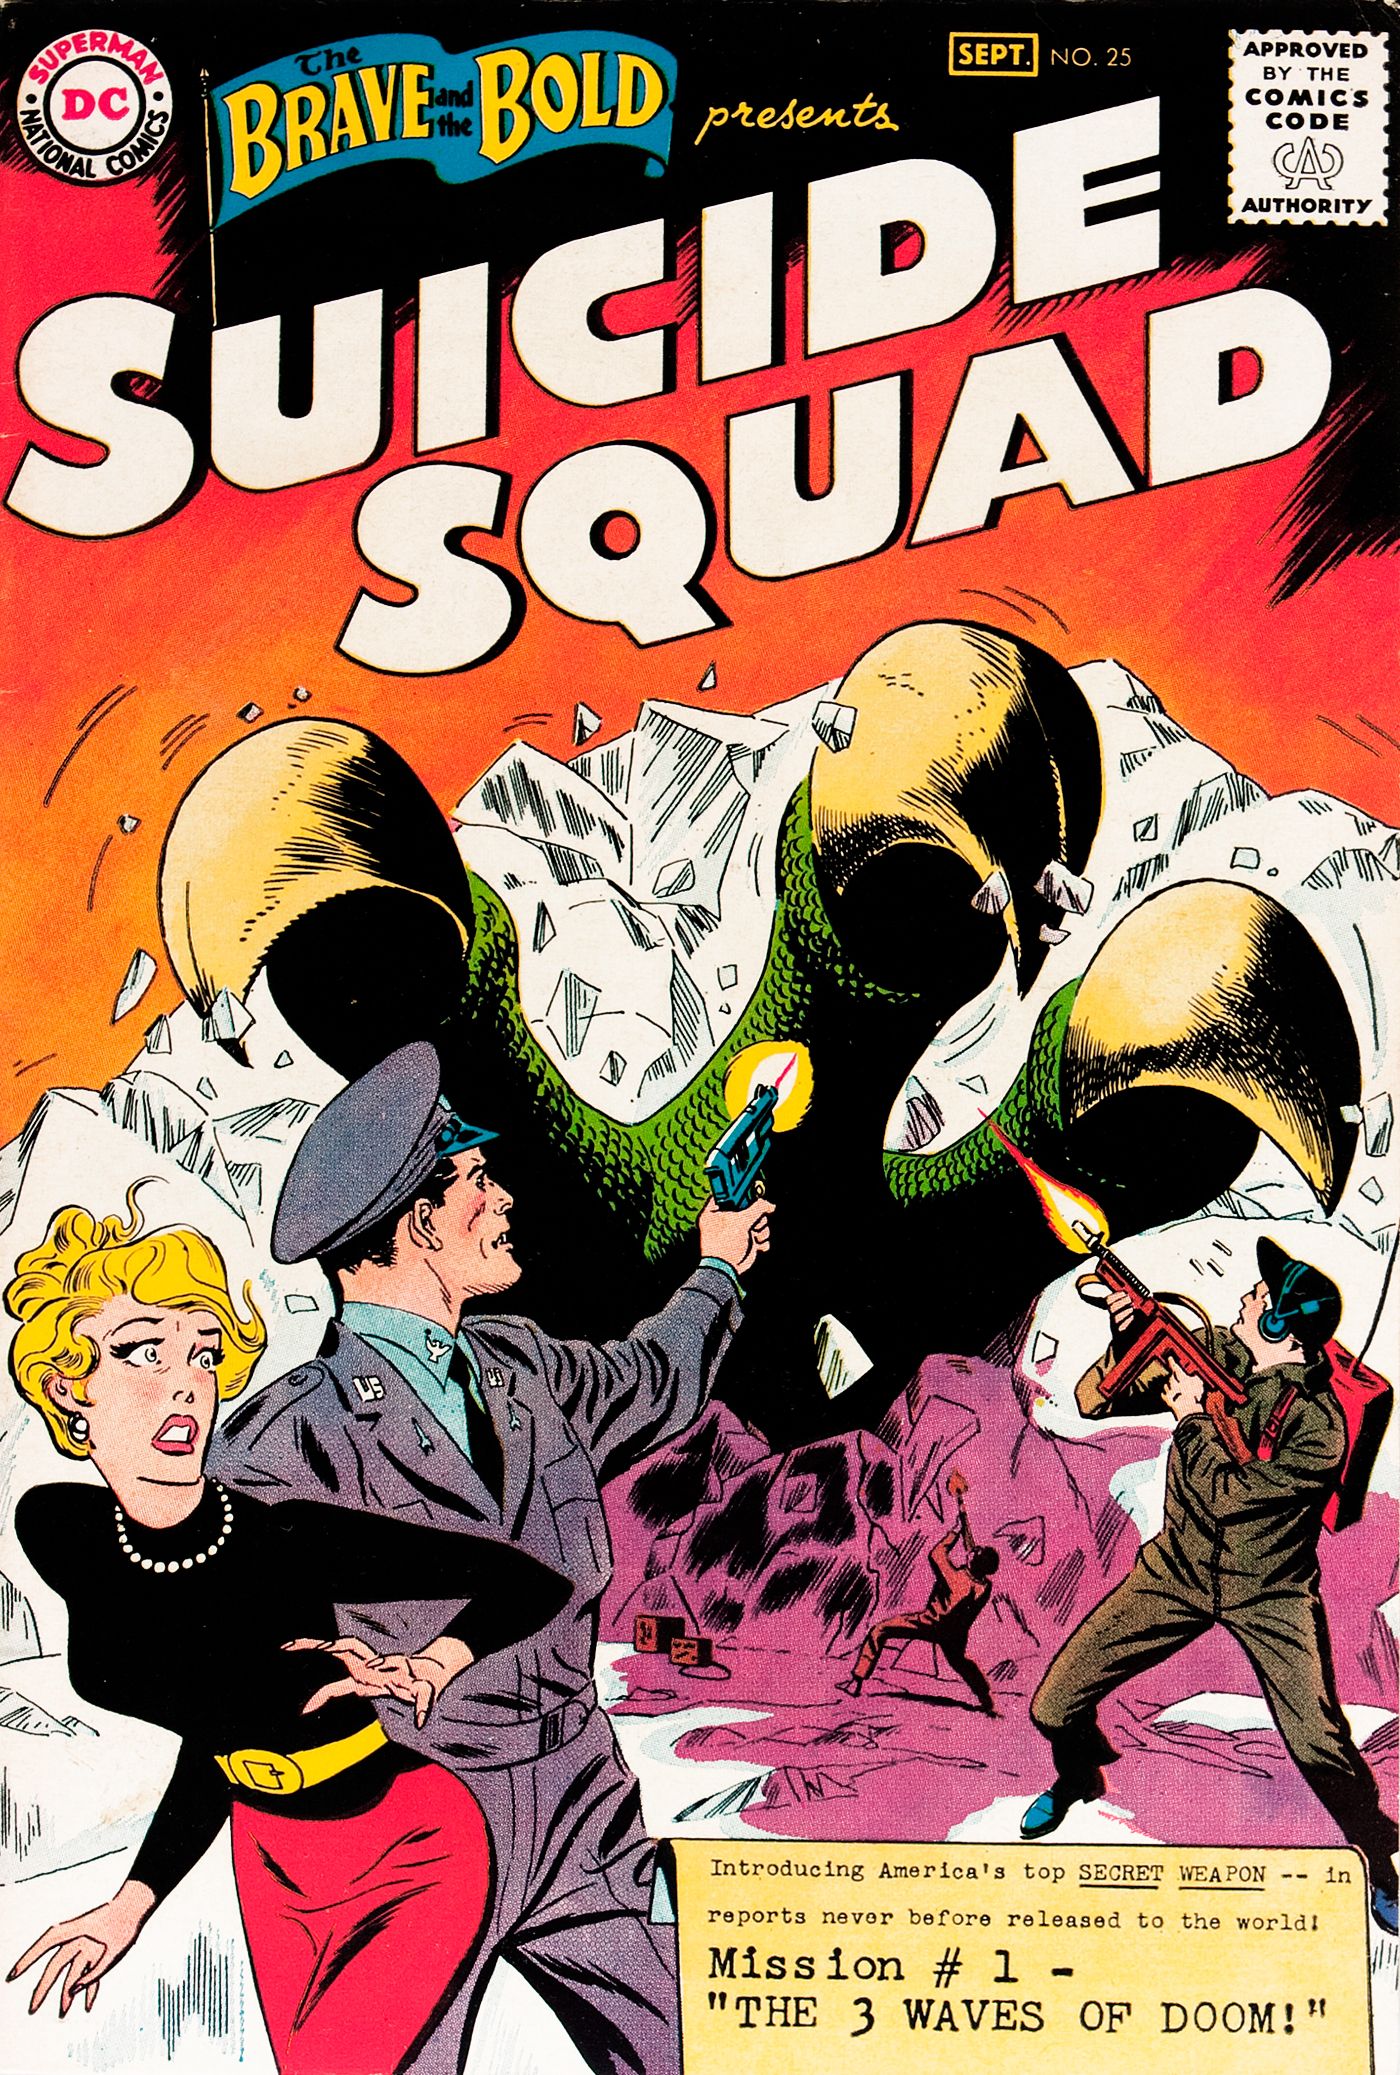 Comic Fans Wouldnt Recognize DCs Original Suicide Squad